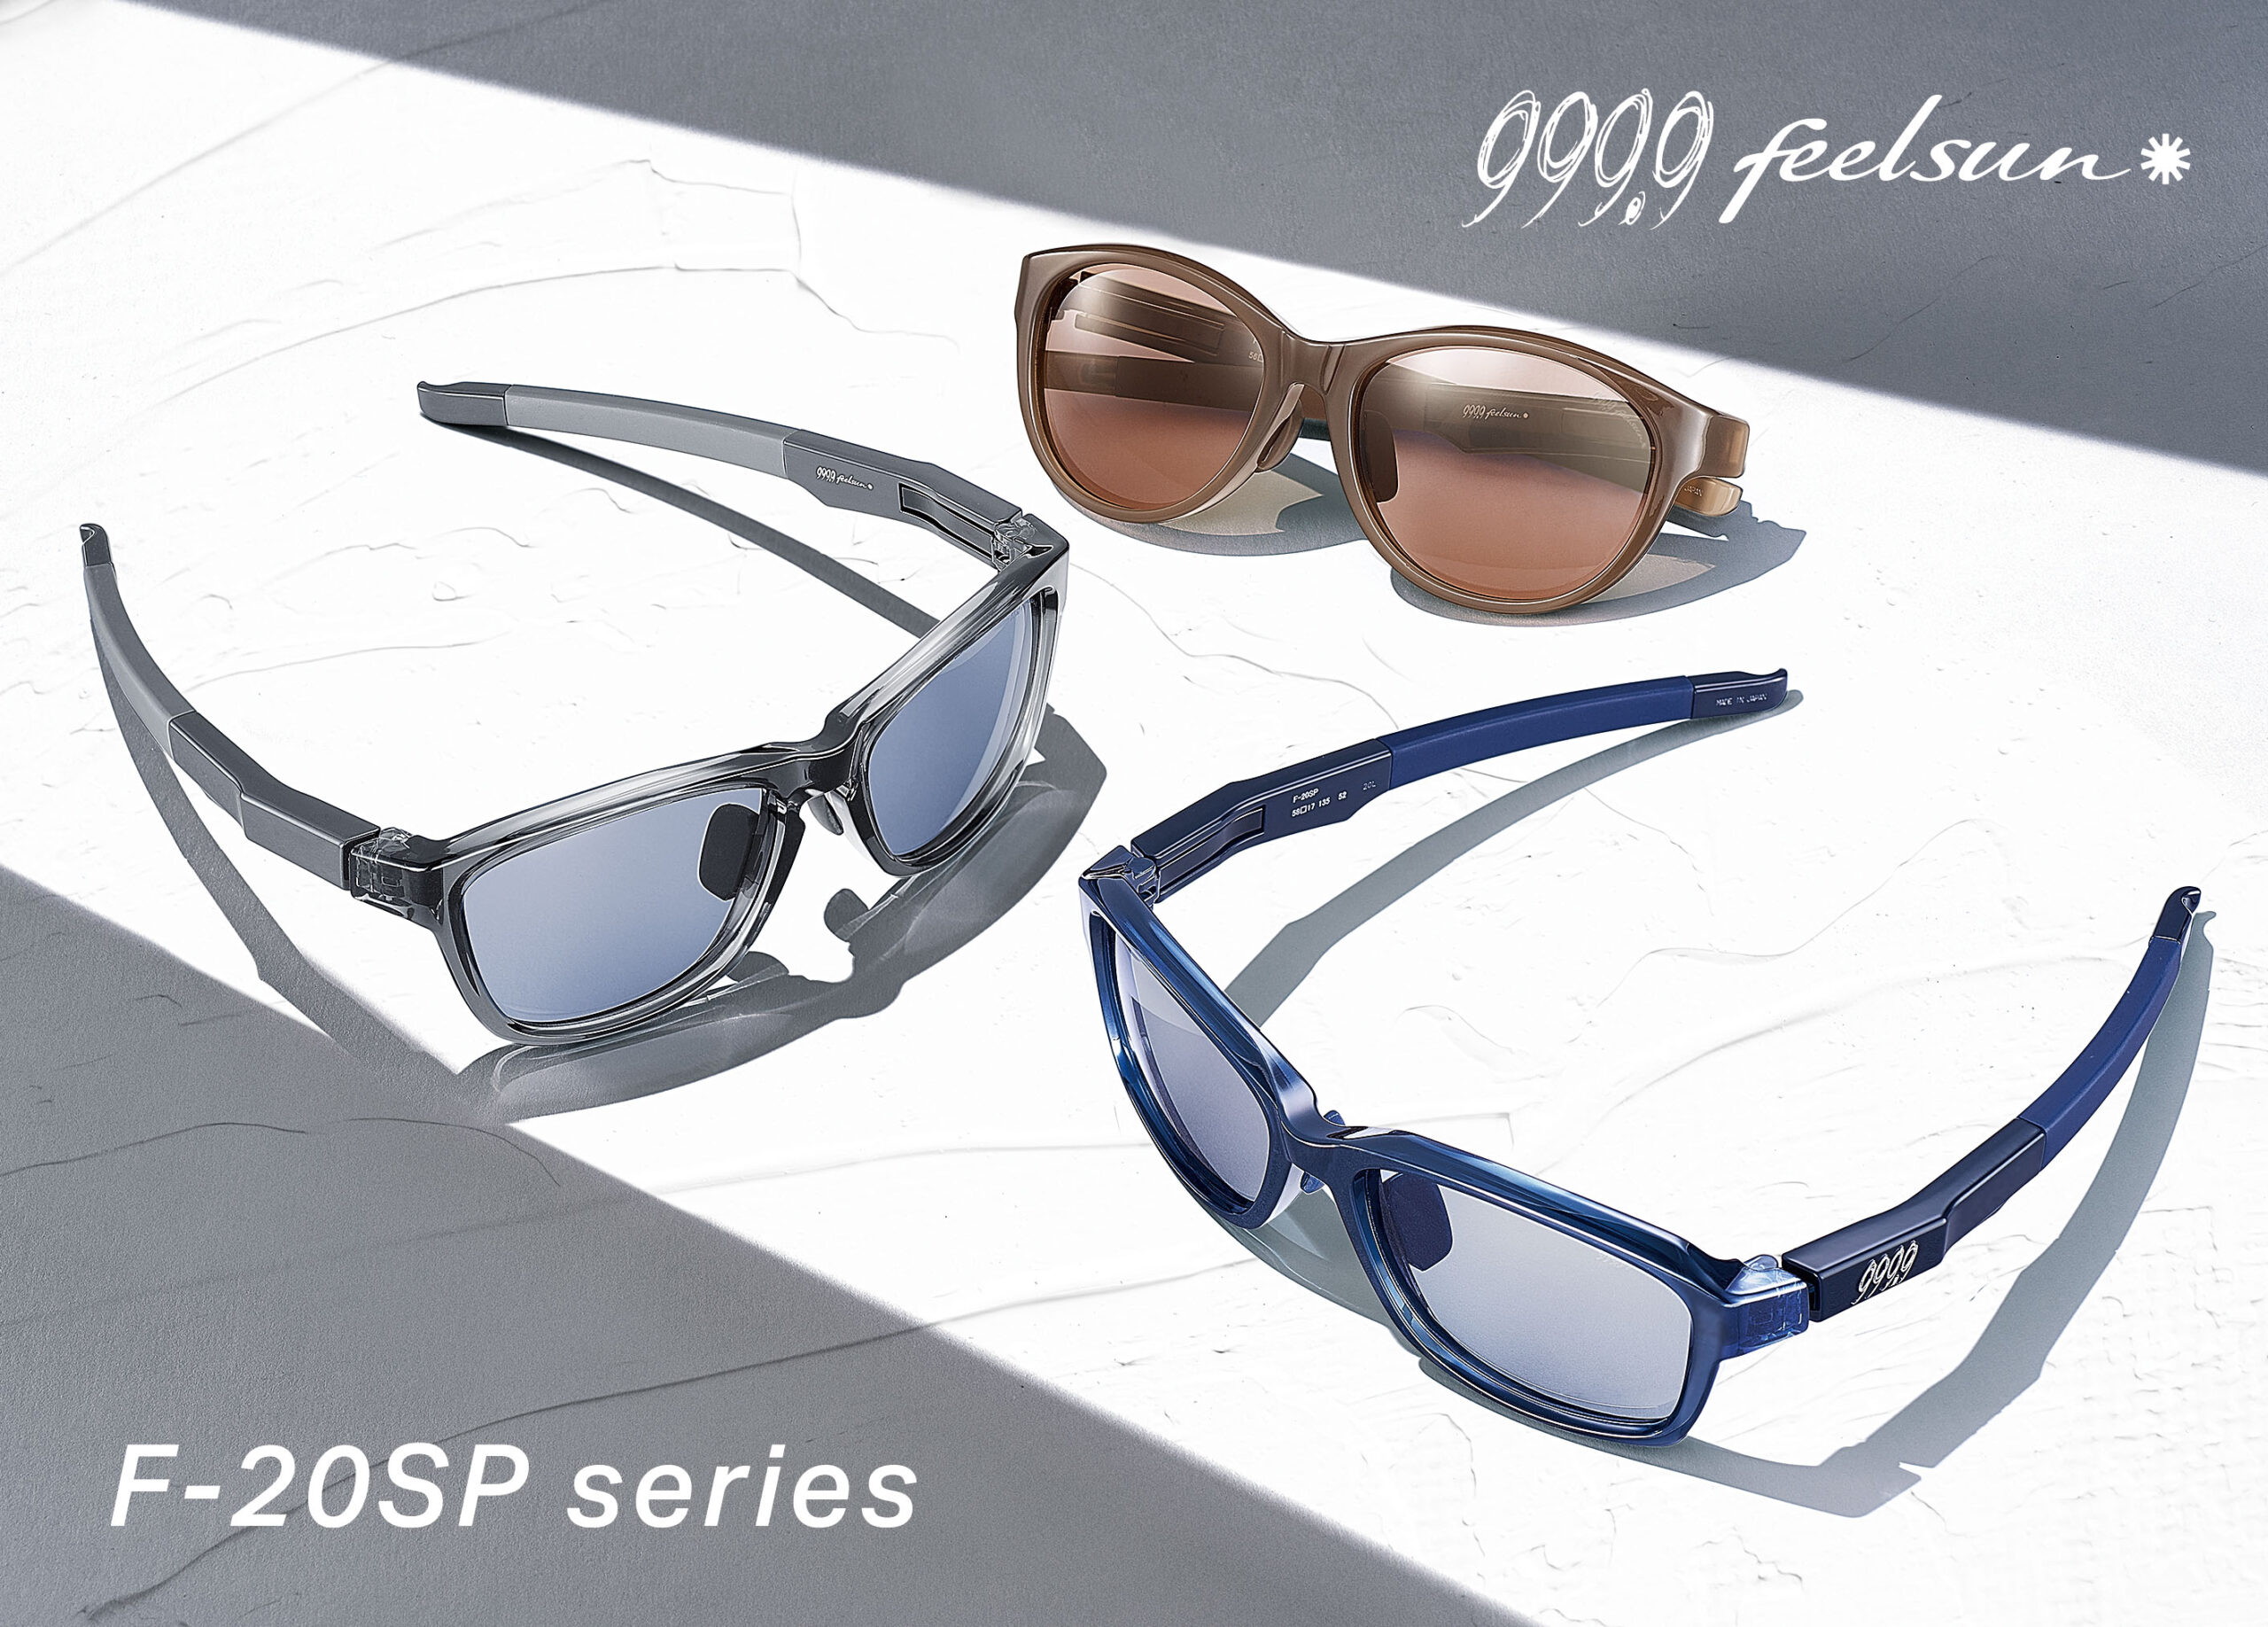 999.9 feelsunのSPシリーズが、新たなデザイン、新たなカラーリングで 